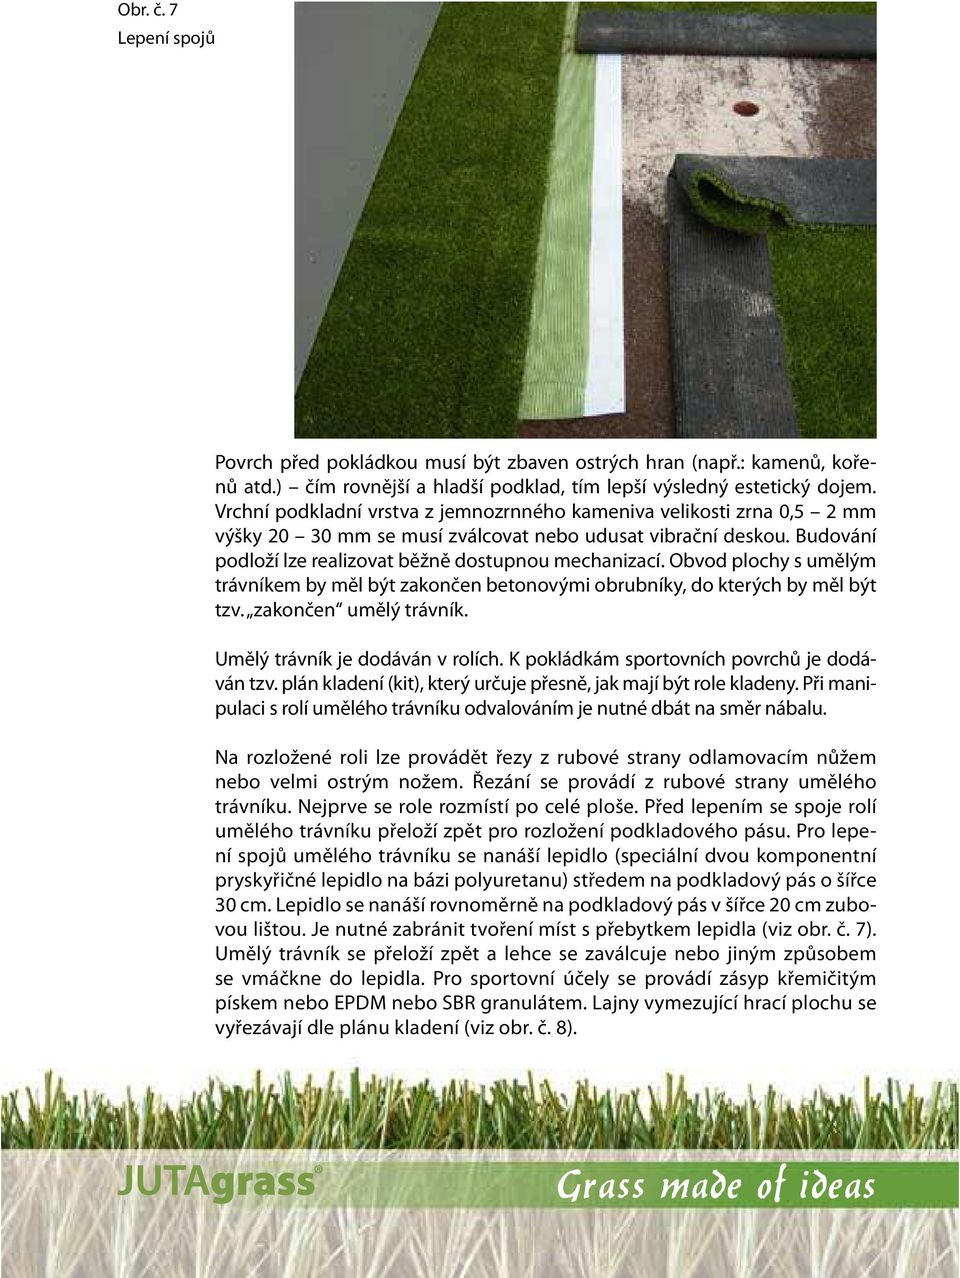 Obvod plochy s umělým trávníkem by měl být zakončen betonovými obrubníky, do kterých by měl být tzv. zakončen umělý trávník. Umělý trávník je dodáván v rolích.